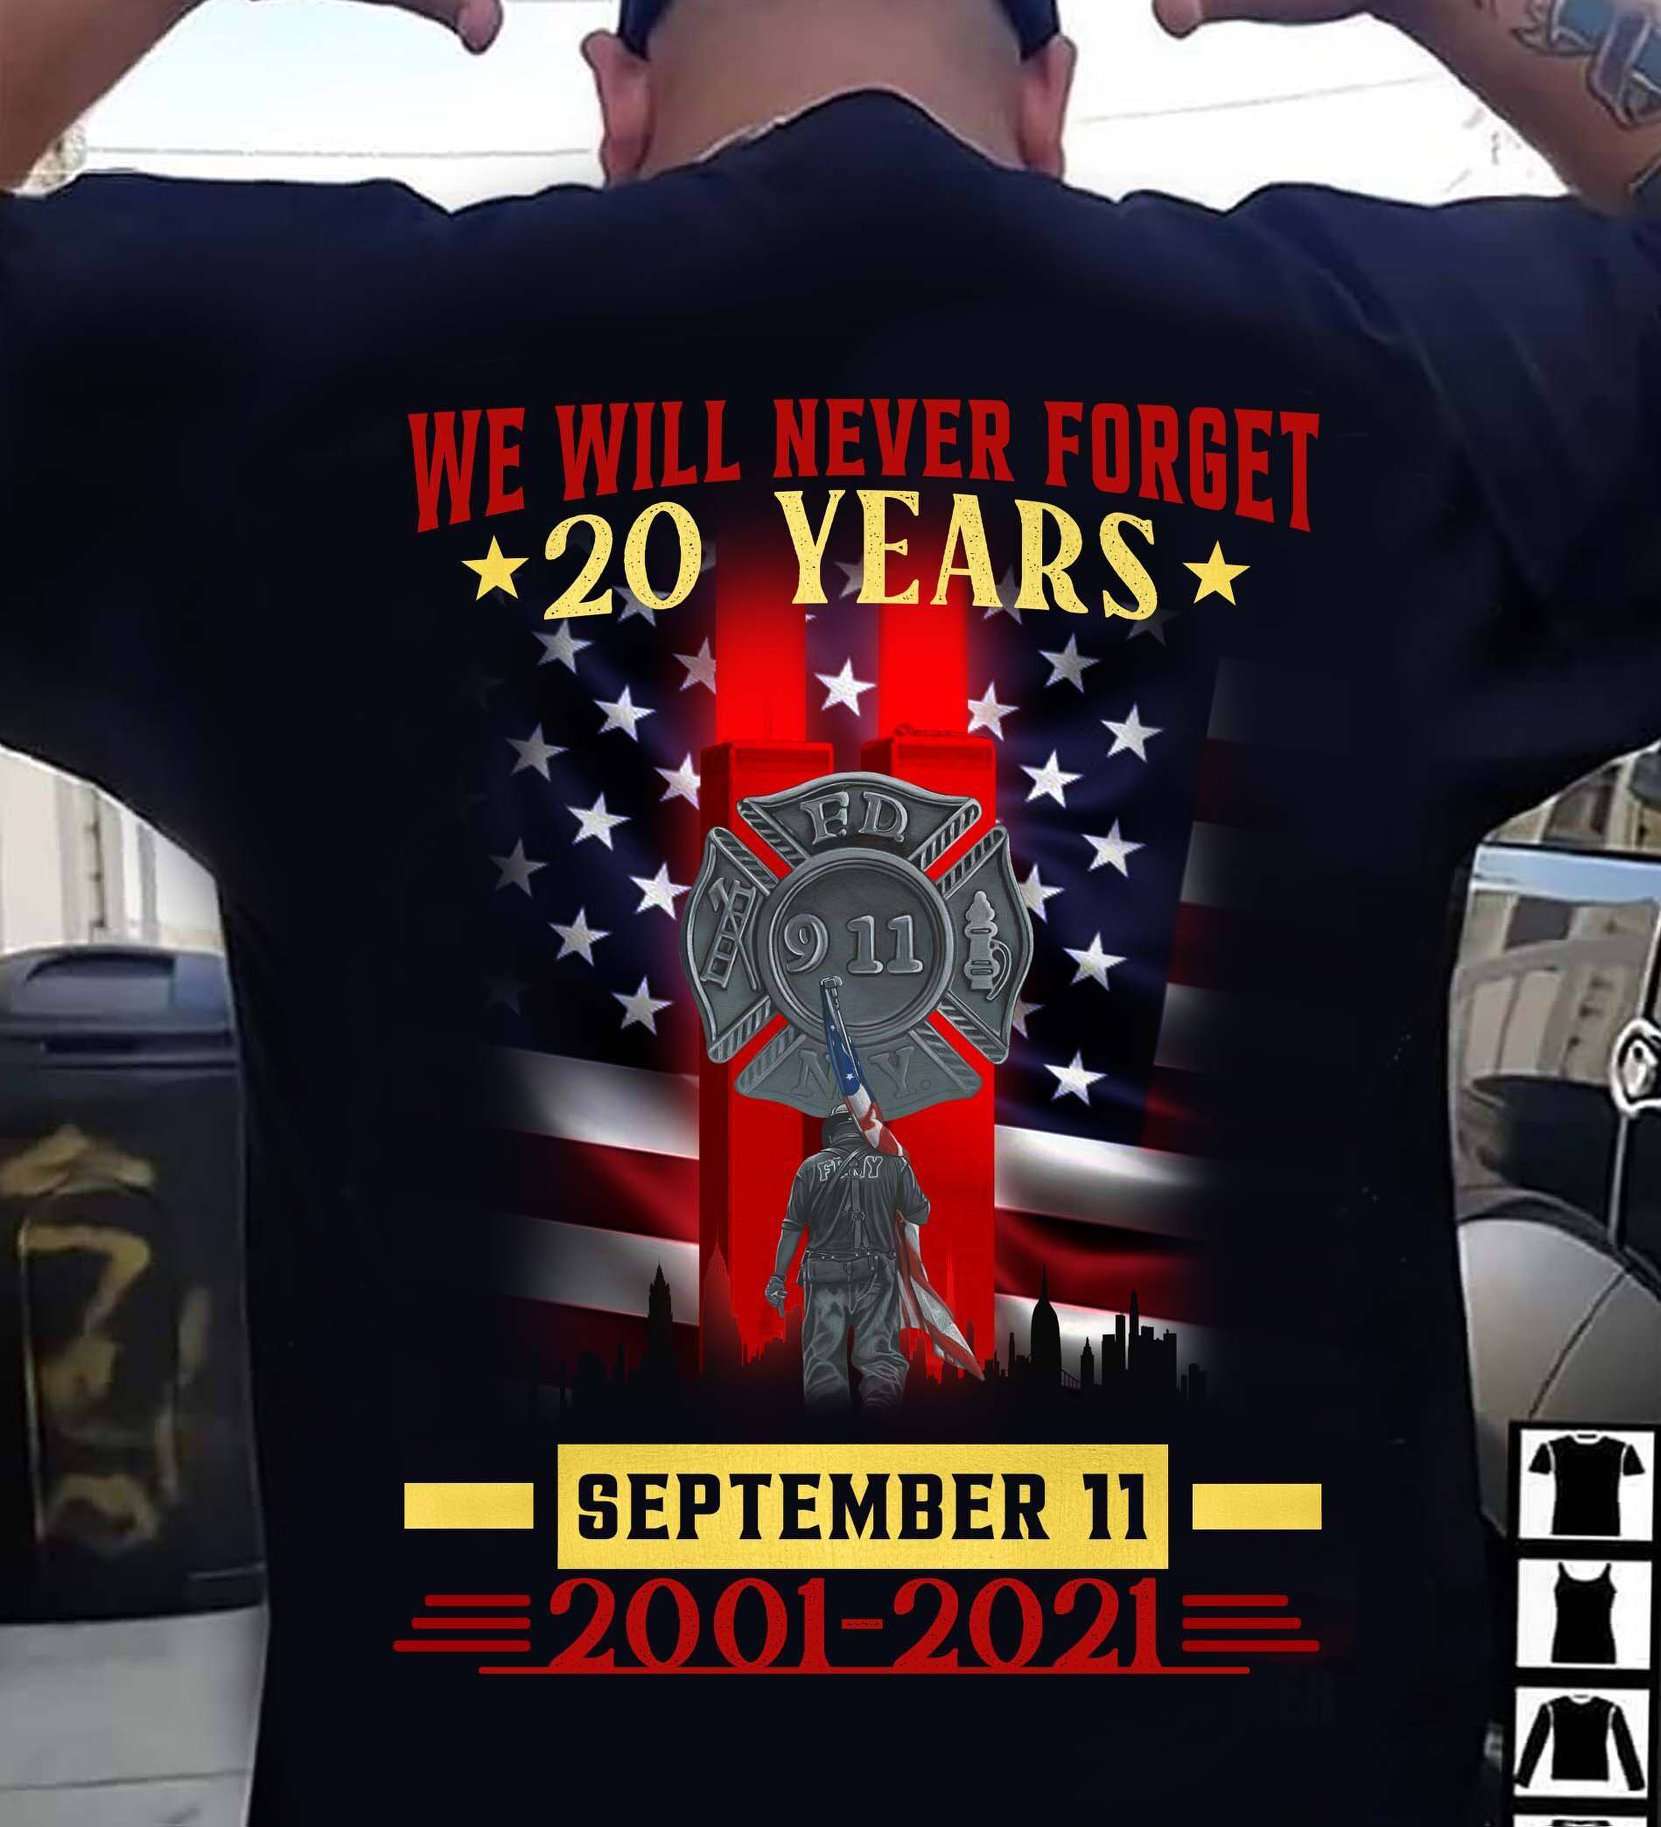 Firefighter September 11 - We will never forget 20 years september 11 2001 2021